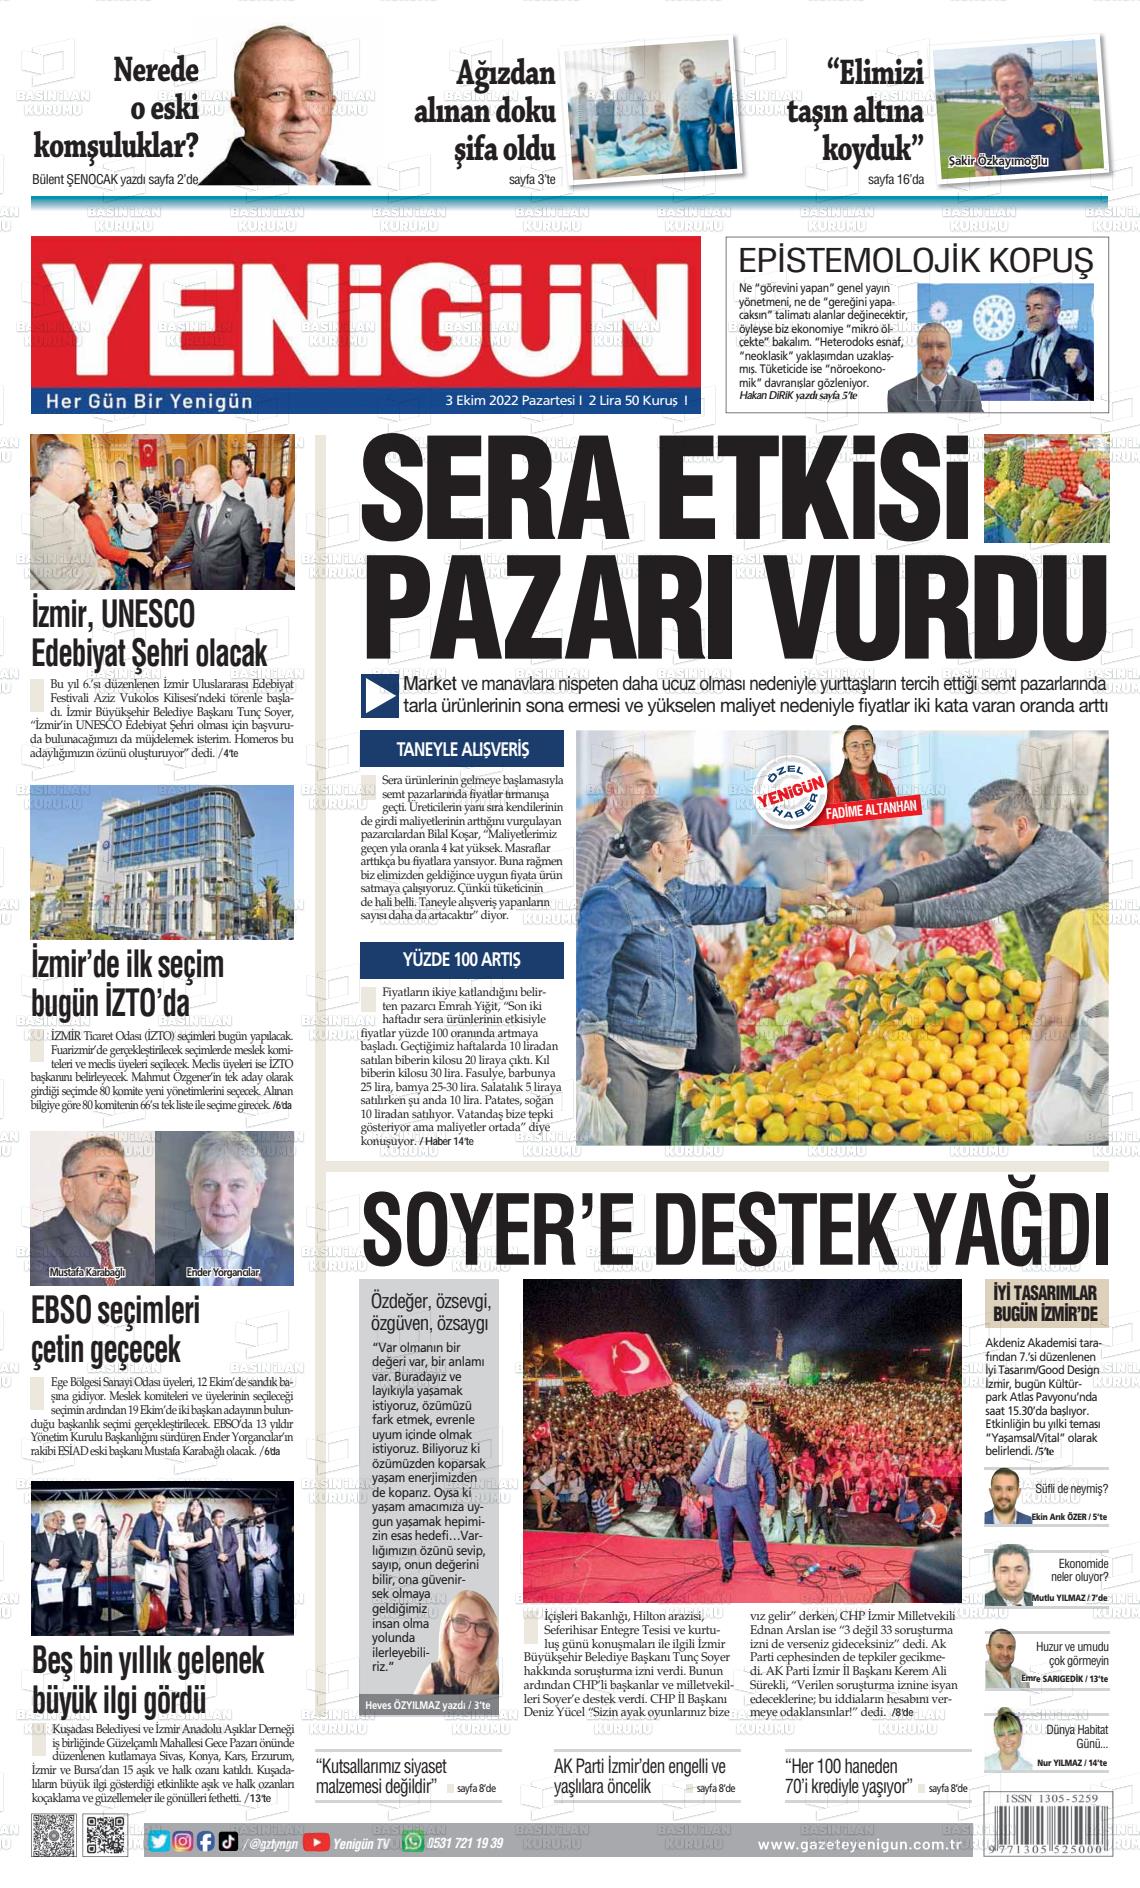 03 Ekim 2022 Yeni Gün Gazete Manşeti